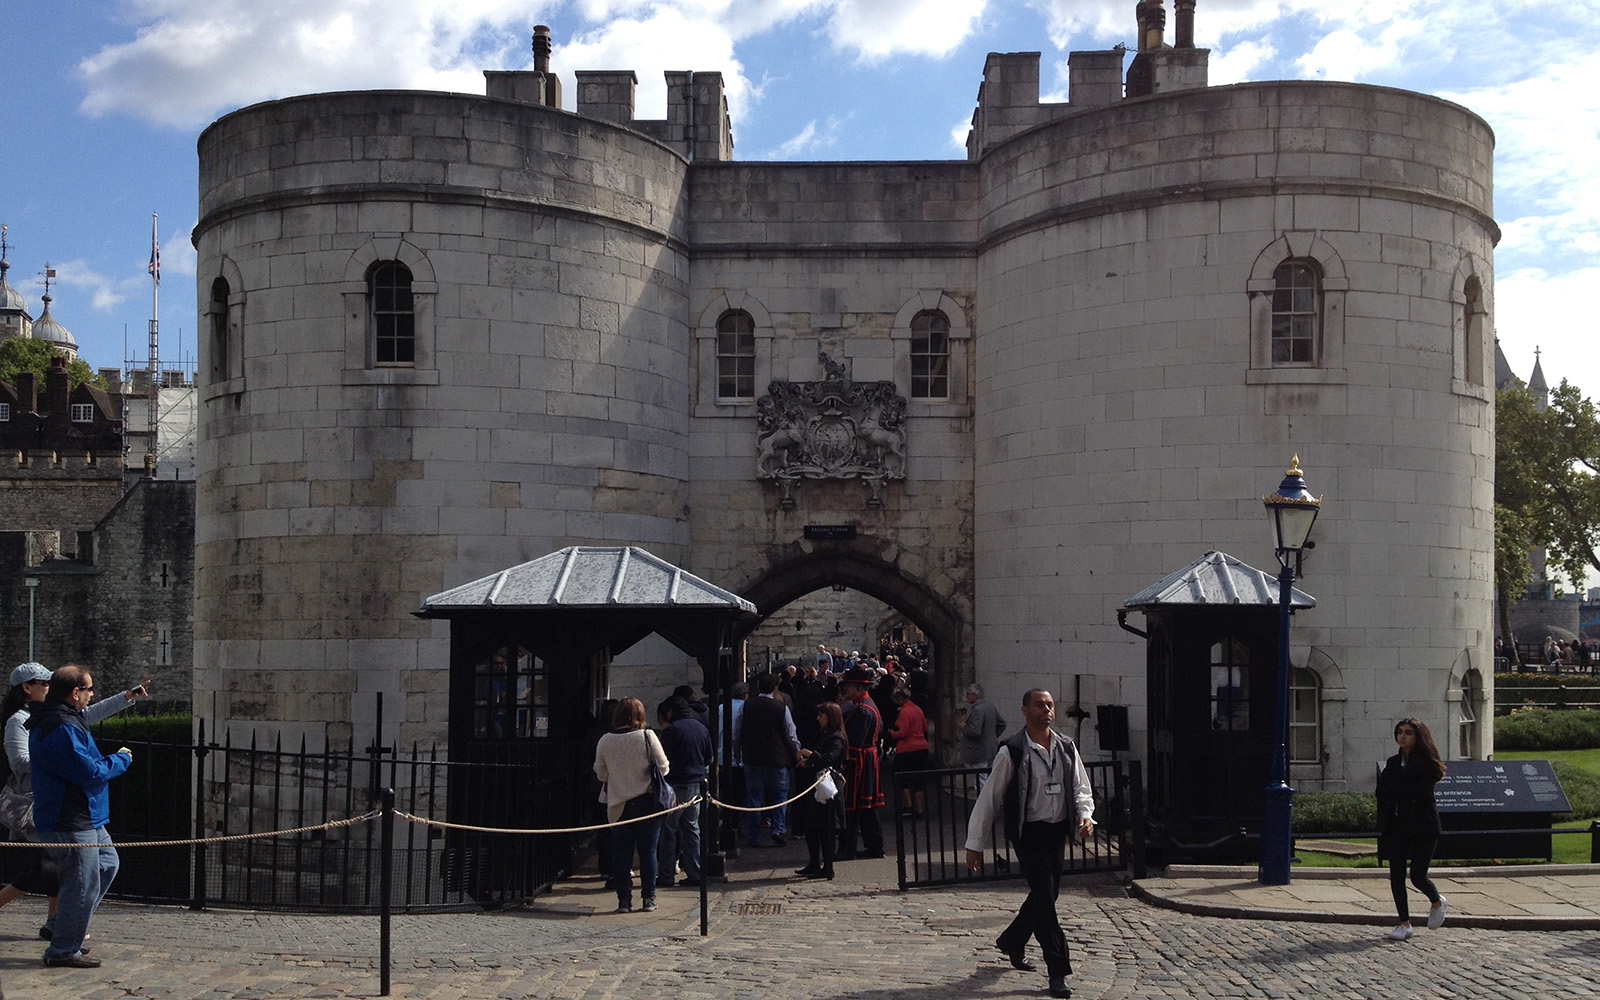 Tower Of London, 5 September 2015